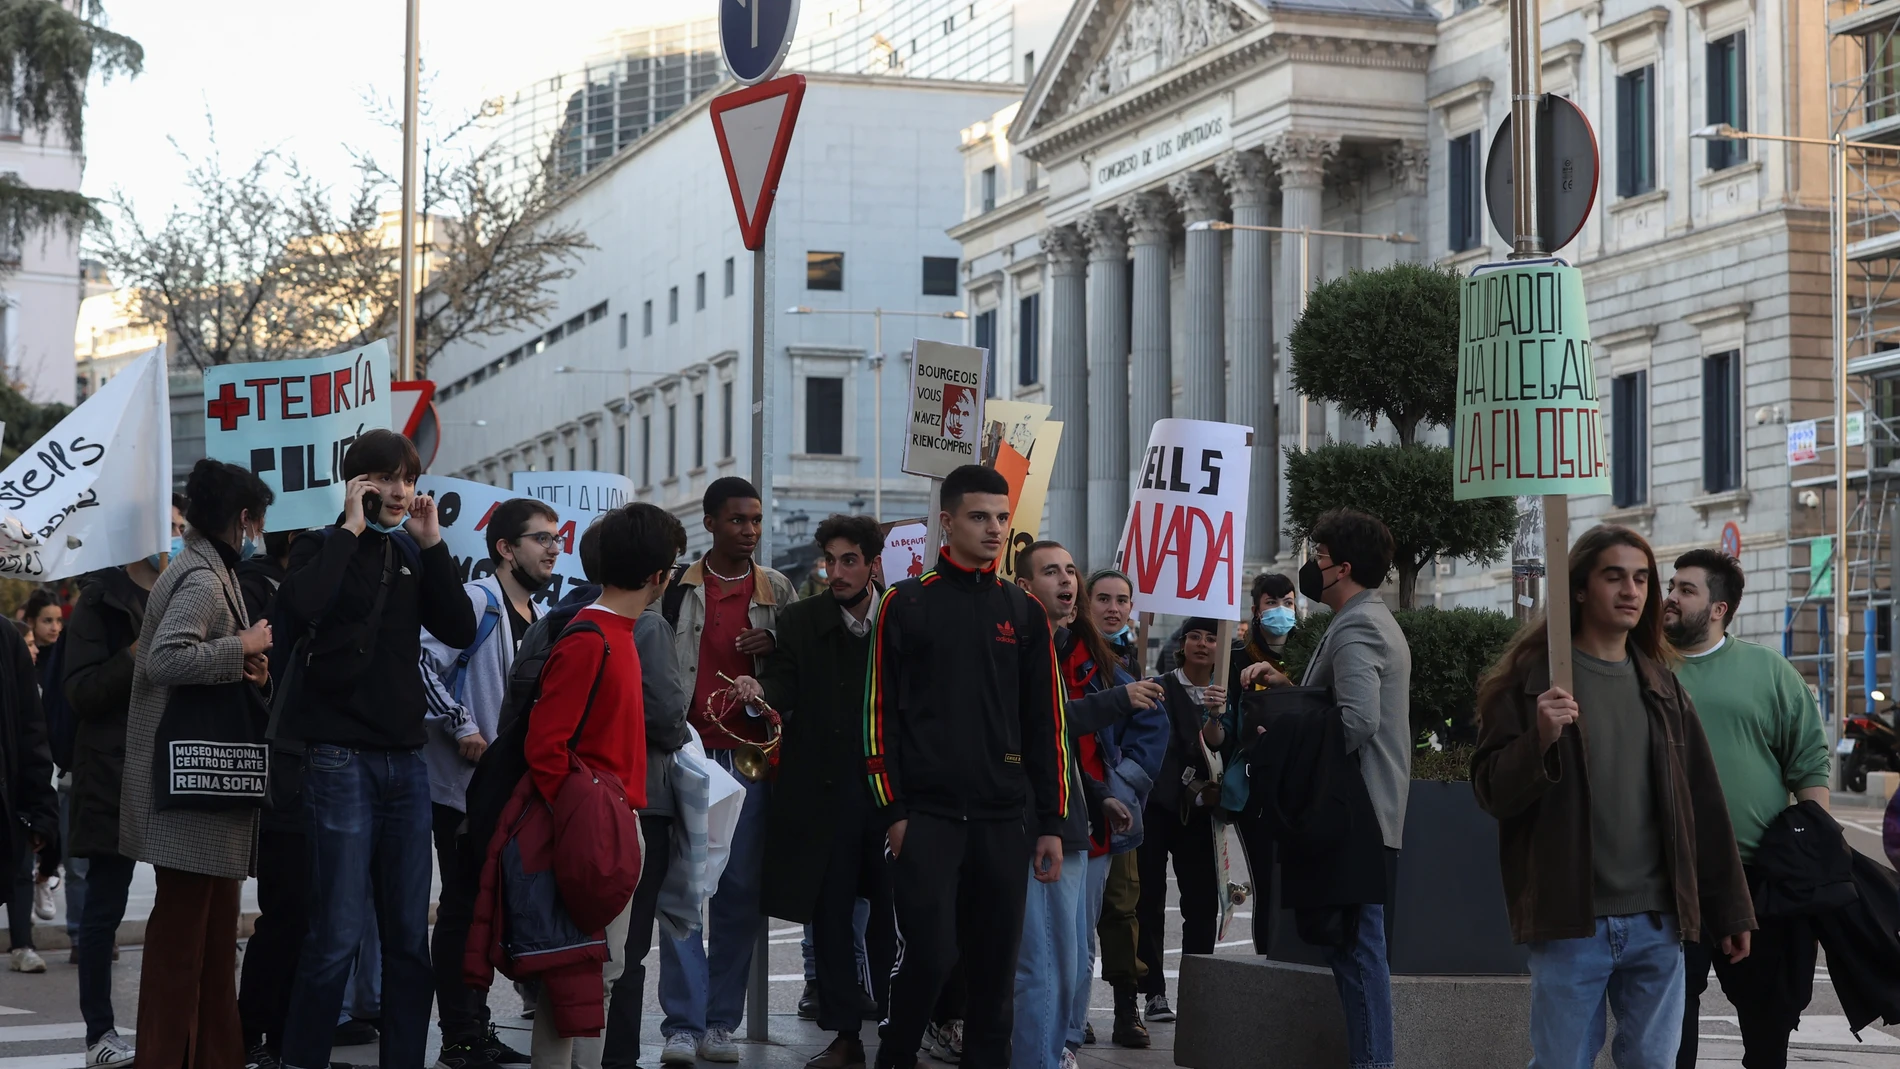 Organizaciones de estudiantes participan en la protesta contra las reformas universitarias y en defensa de una universidad pública de calidad, ayer jueves frente al Congreso de los Diputados en Madrid